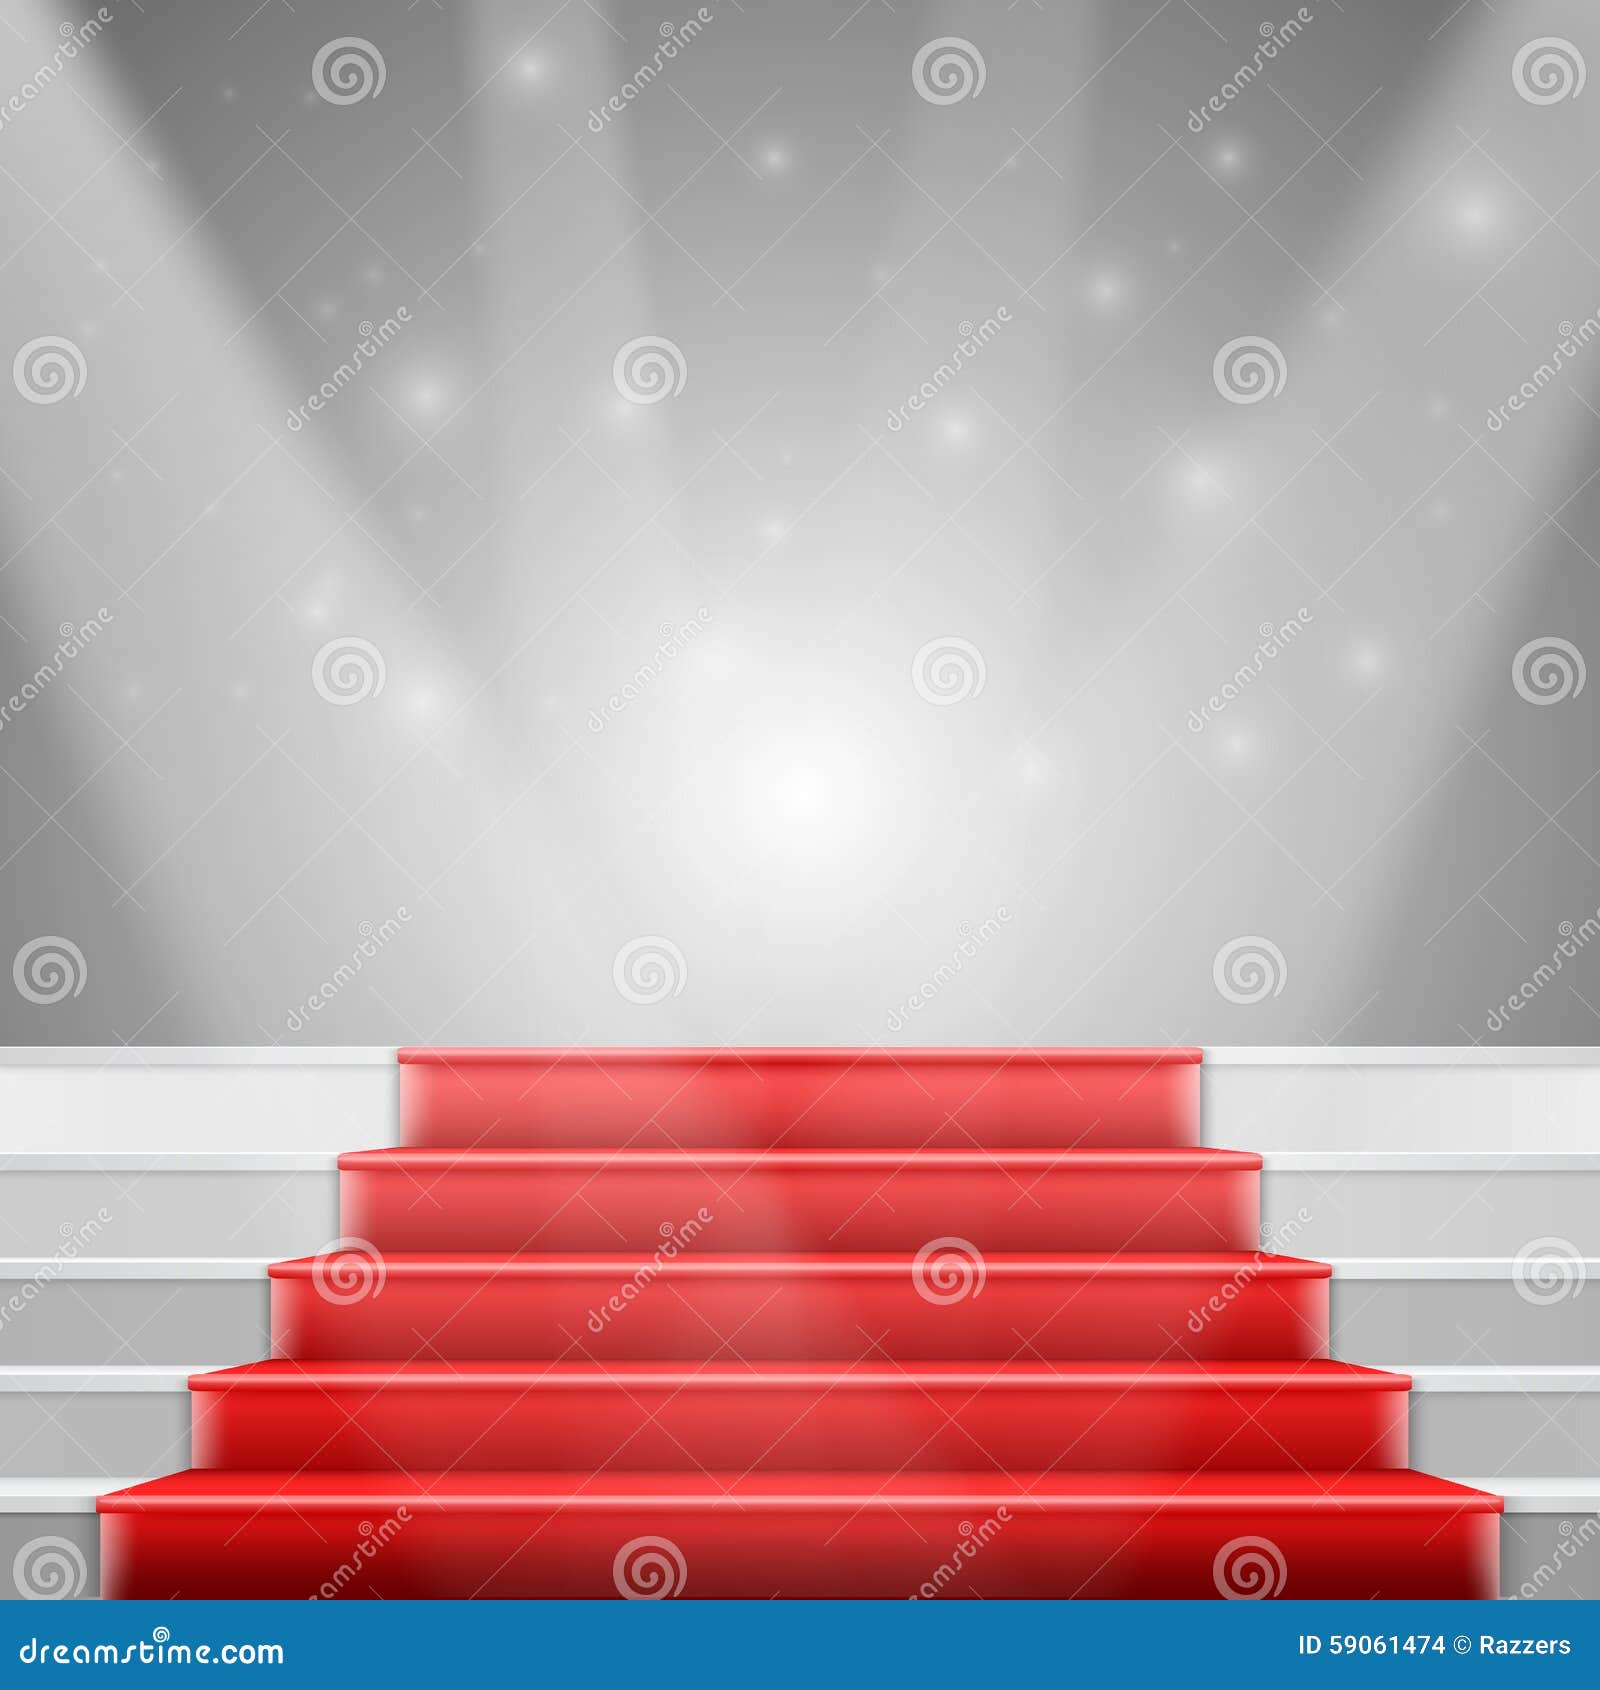 Escaleras fotorrealistas del vector con la alfombra roja y el lujo brillante E. Ejemplo de las escaleras fotorrealistas del vector con la alfombra roja y el fondo de lujo brillante del evento